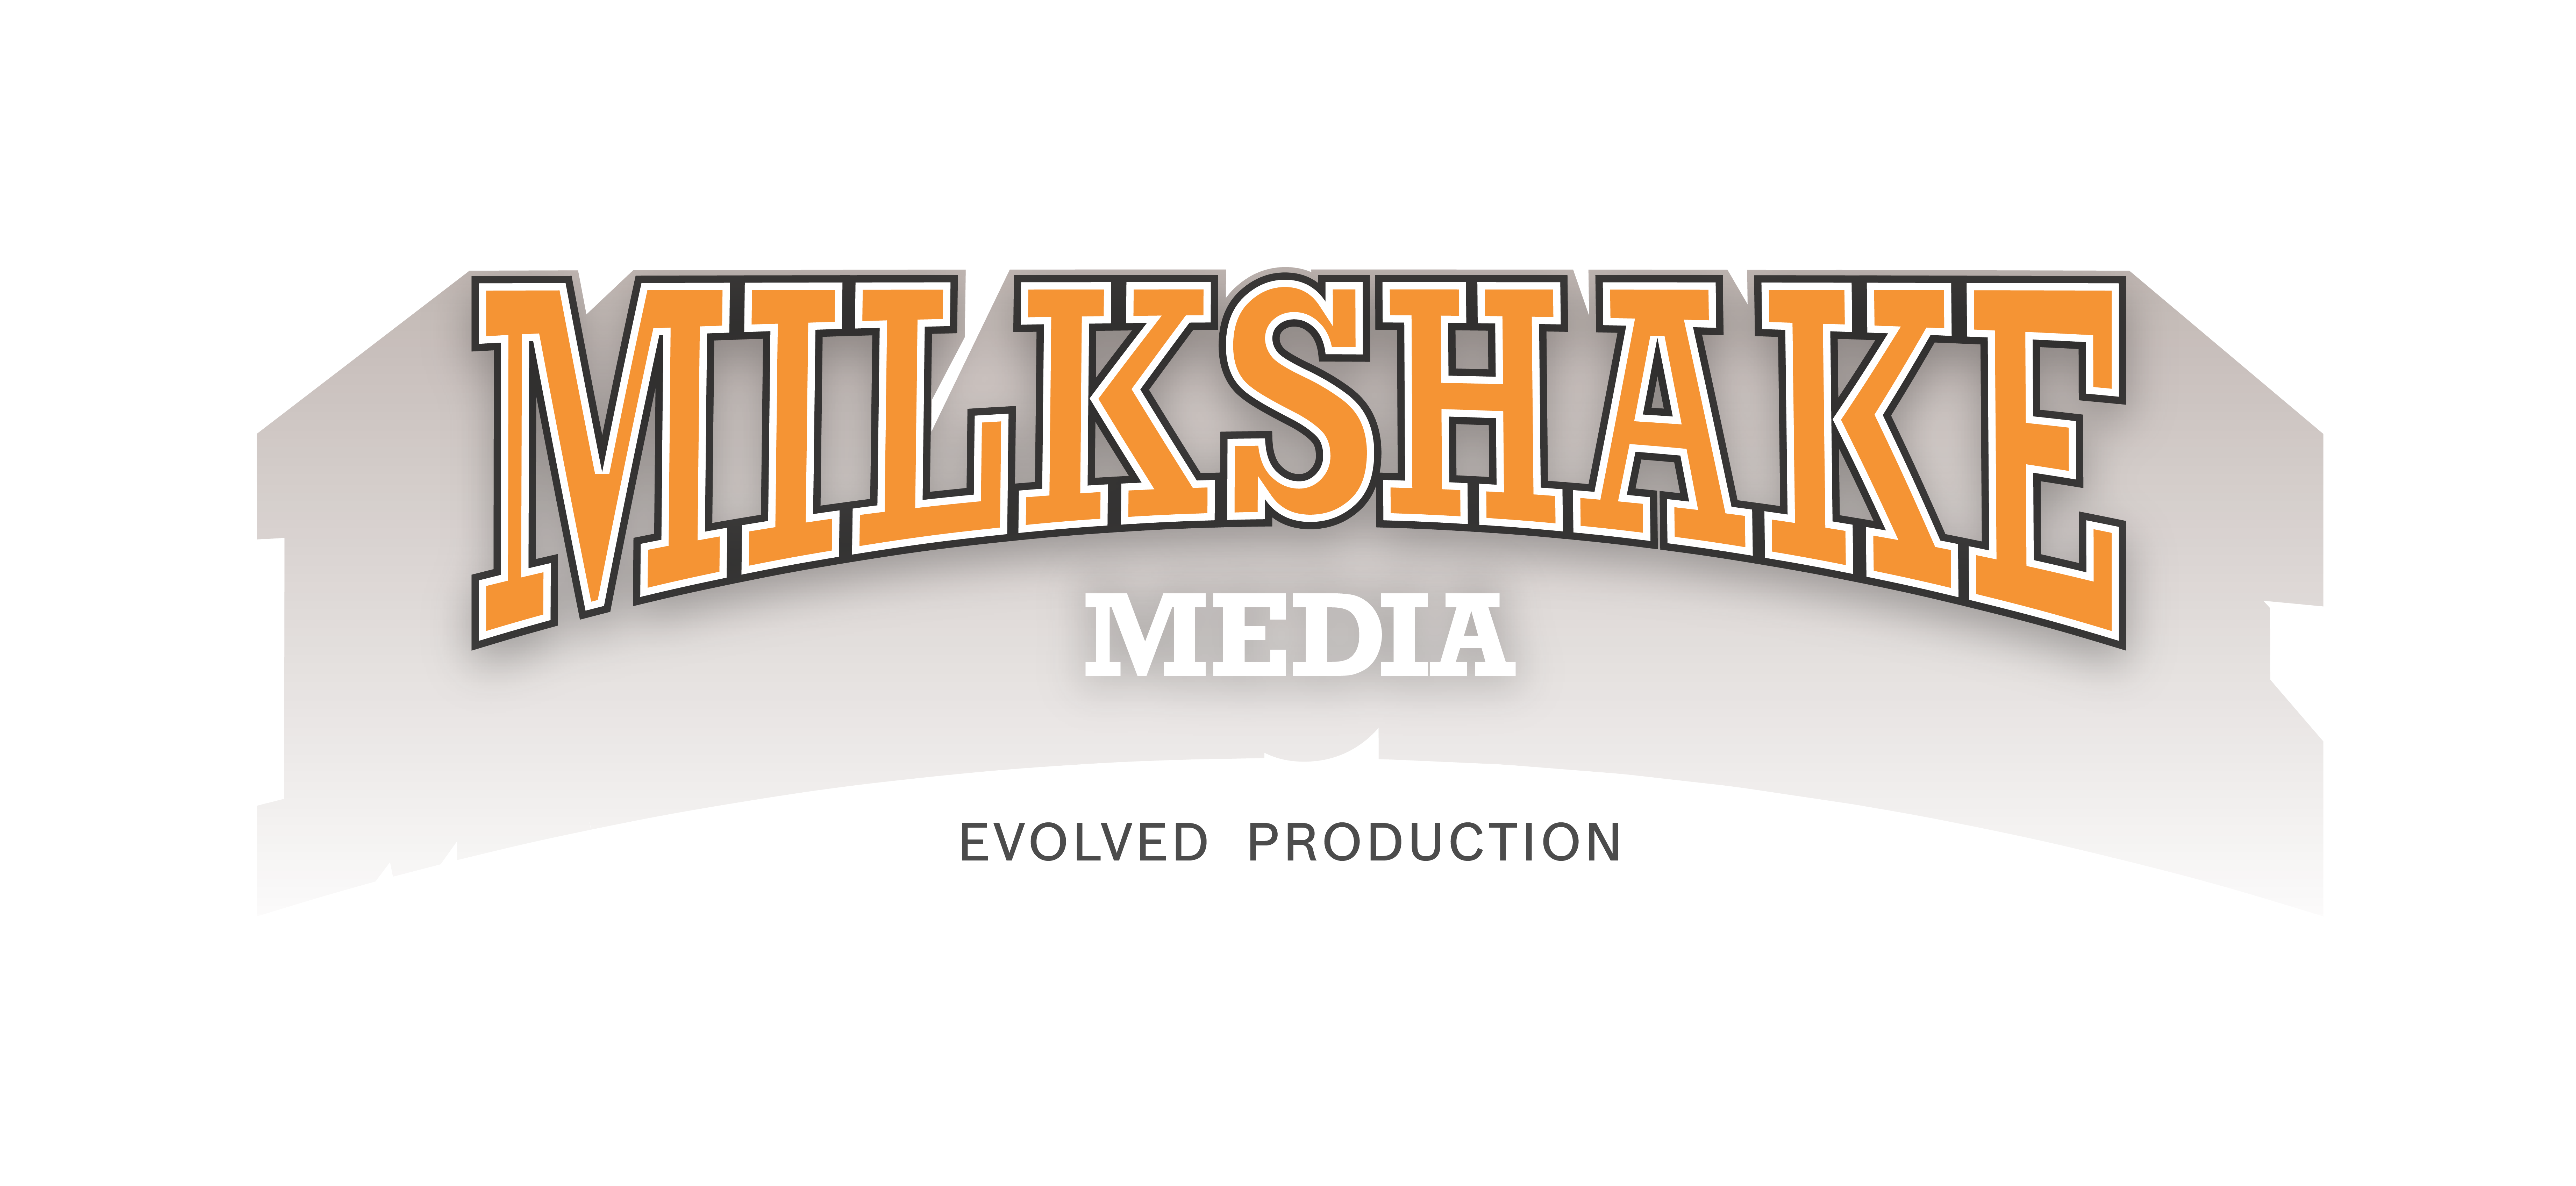 MILKSHAKE MEDIA FZ LLC profile on Qualified.One